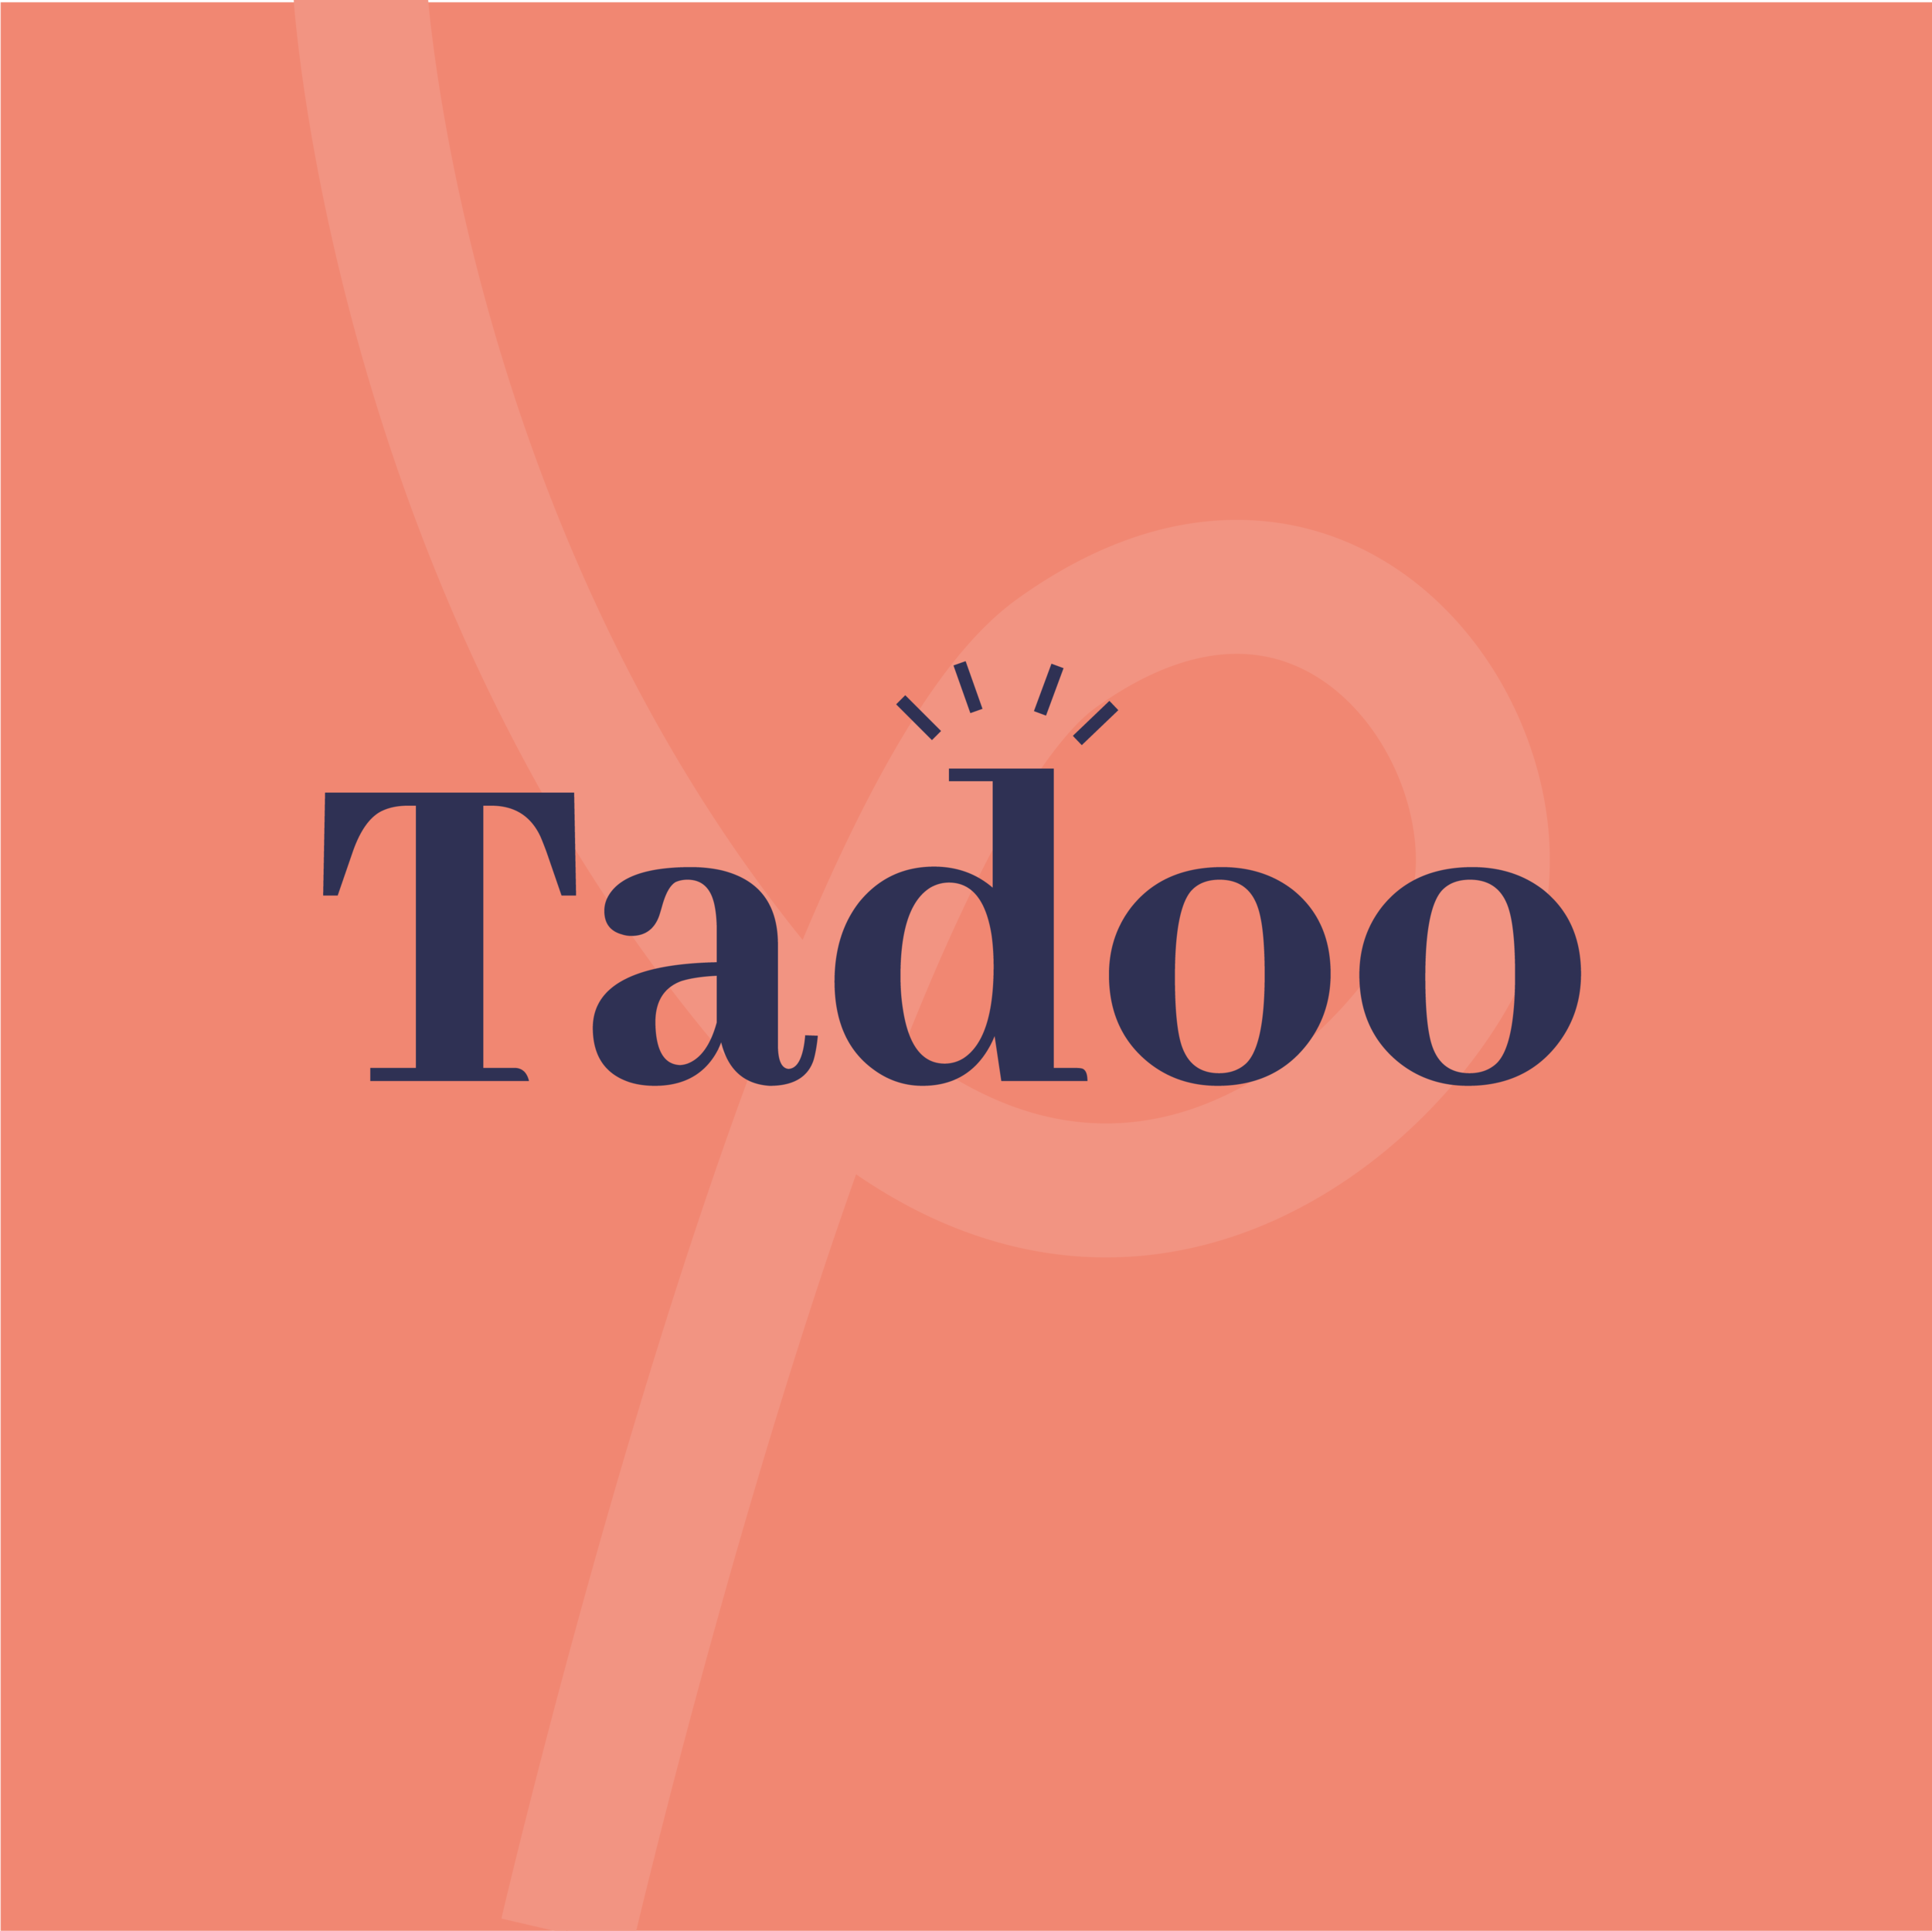 Tadoo